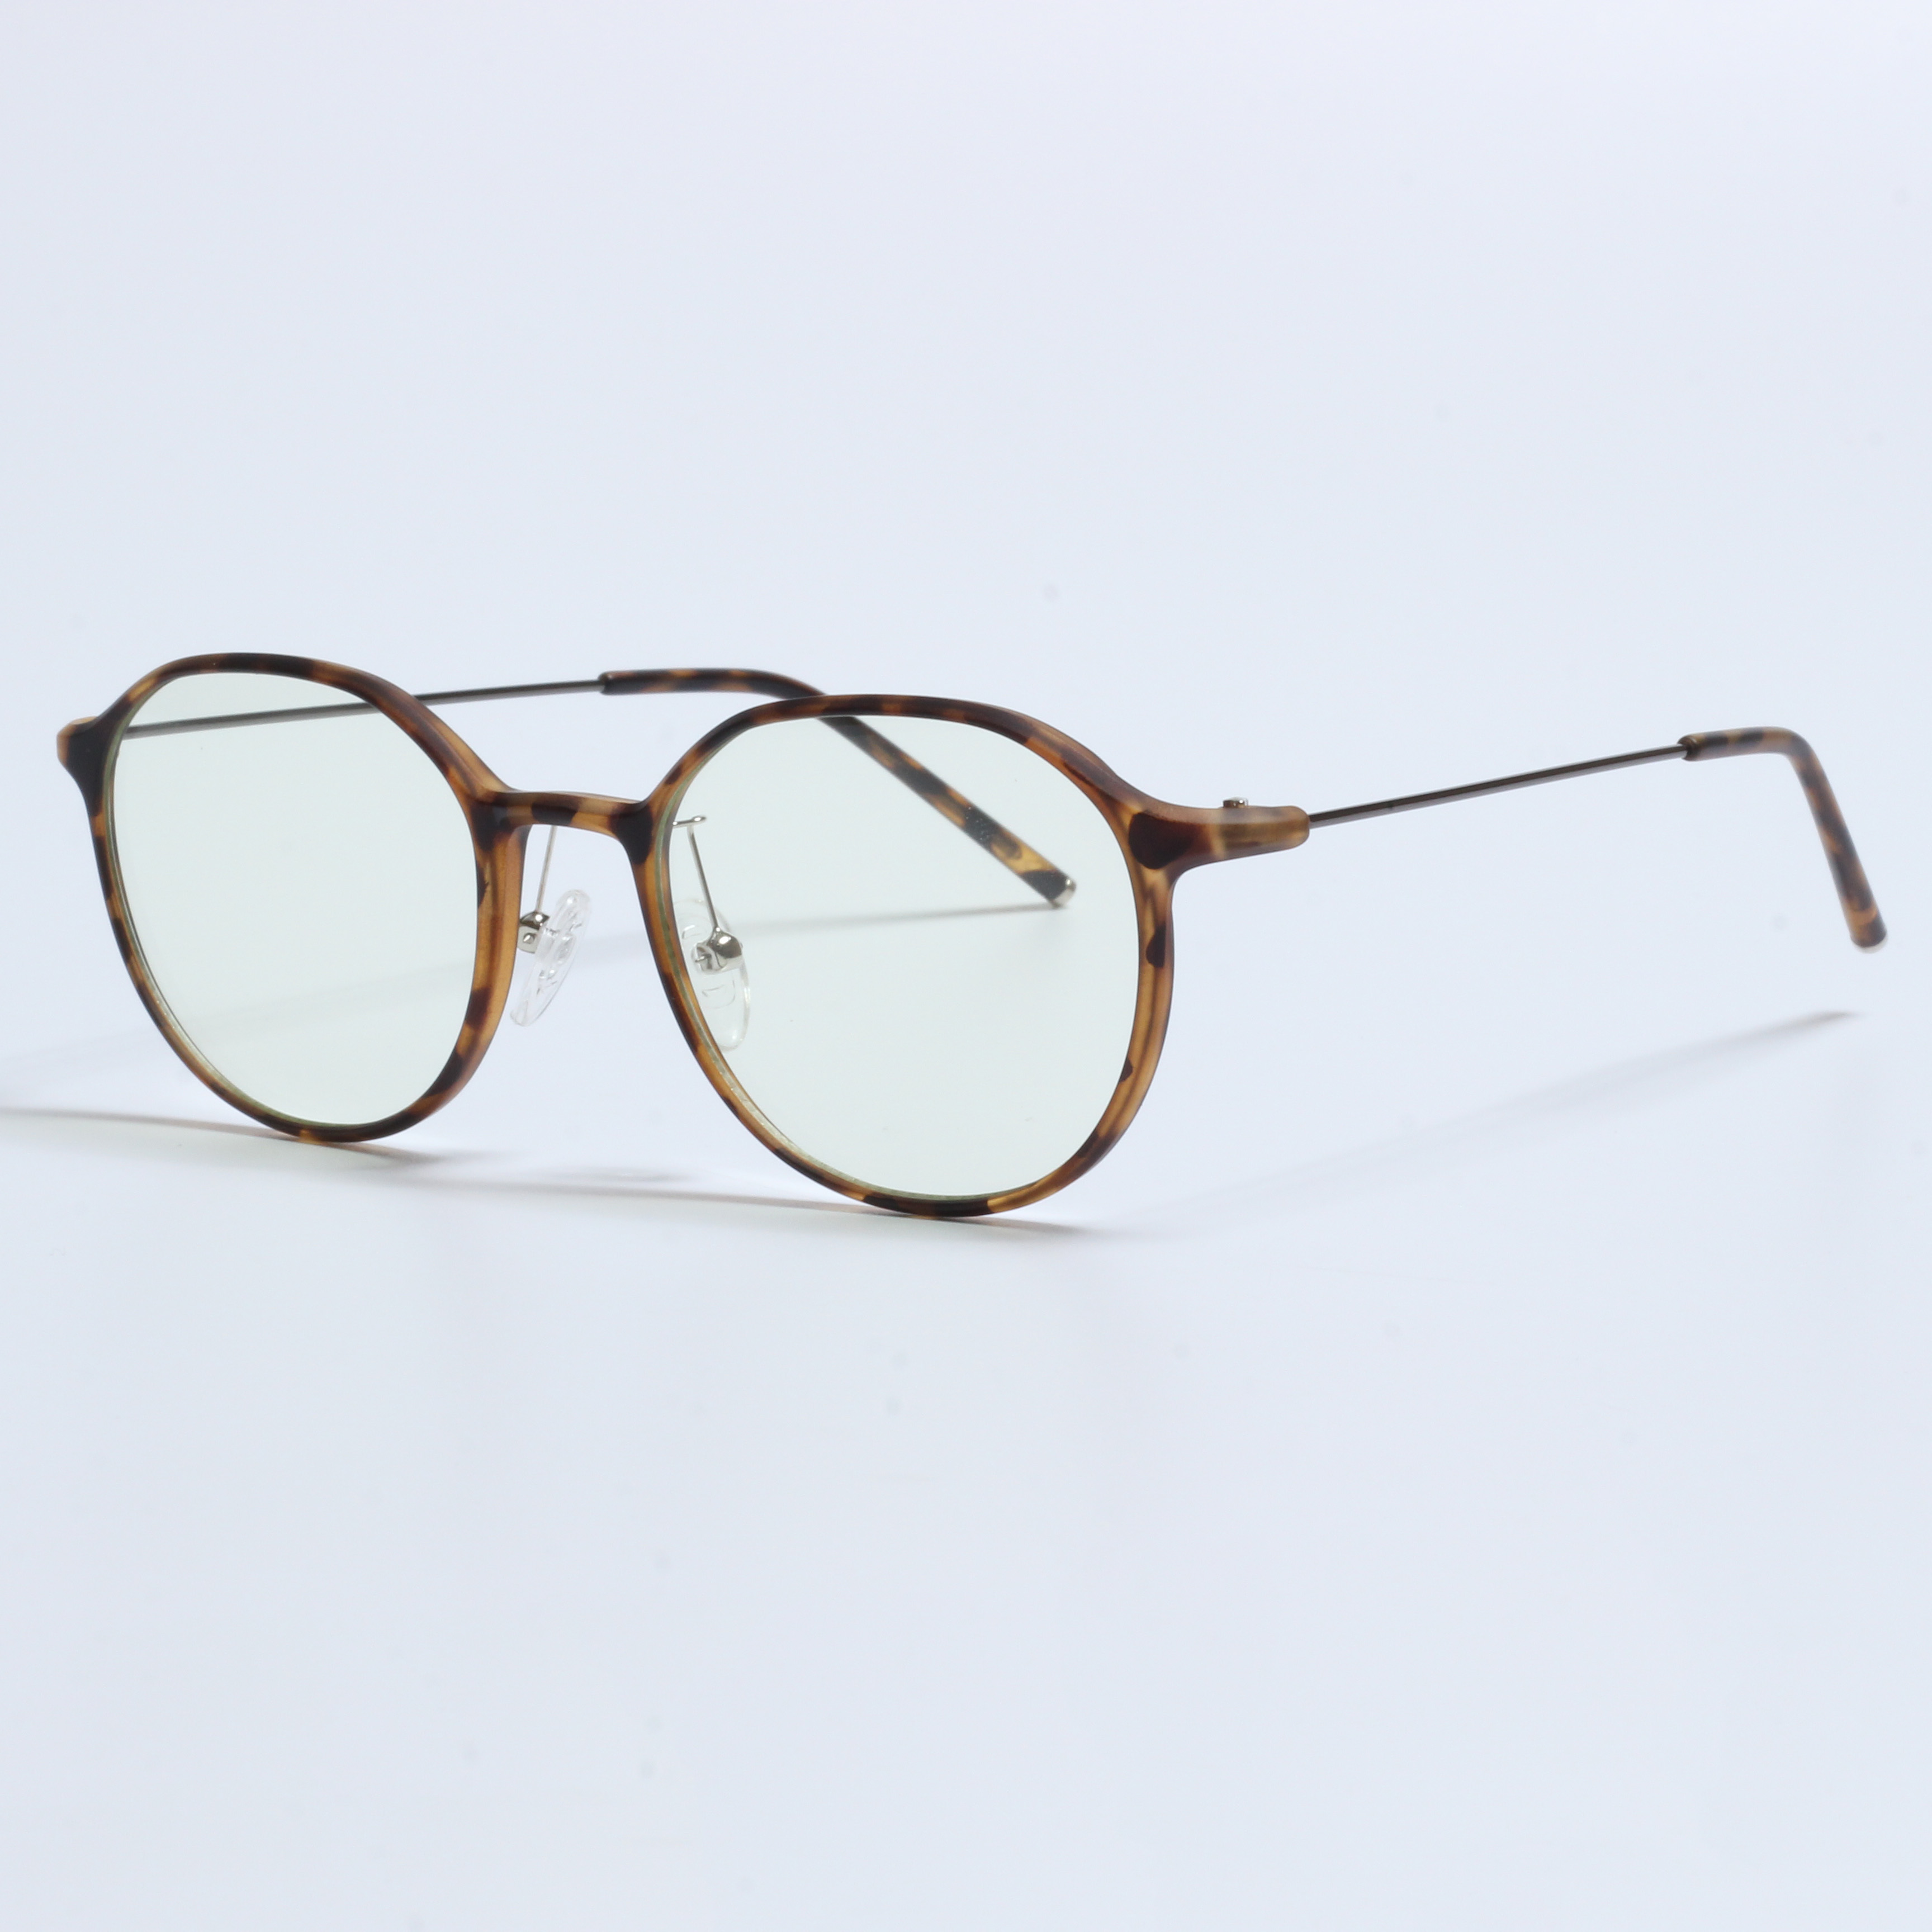 I-Vintage Thick Gafas Opticas De Hombres Transparent TR90 Frames (6)